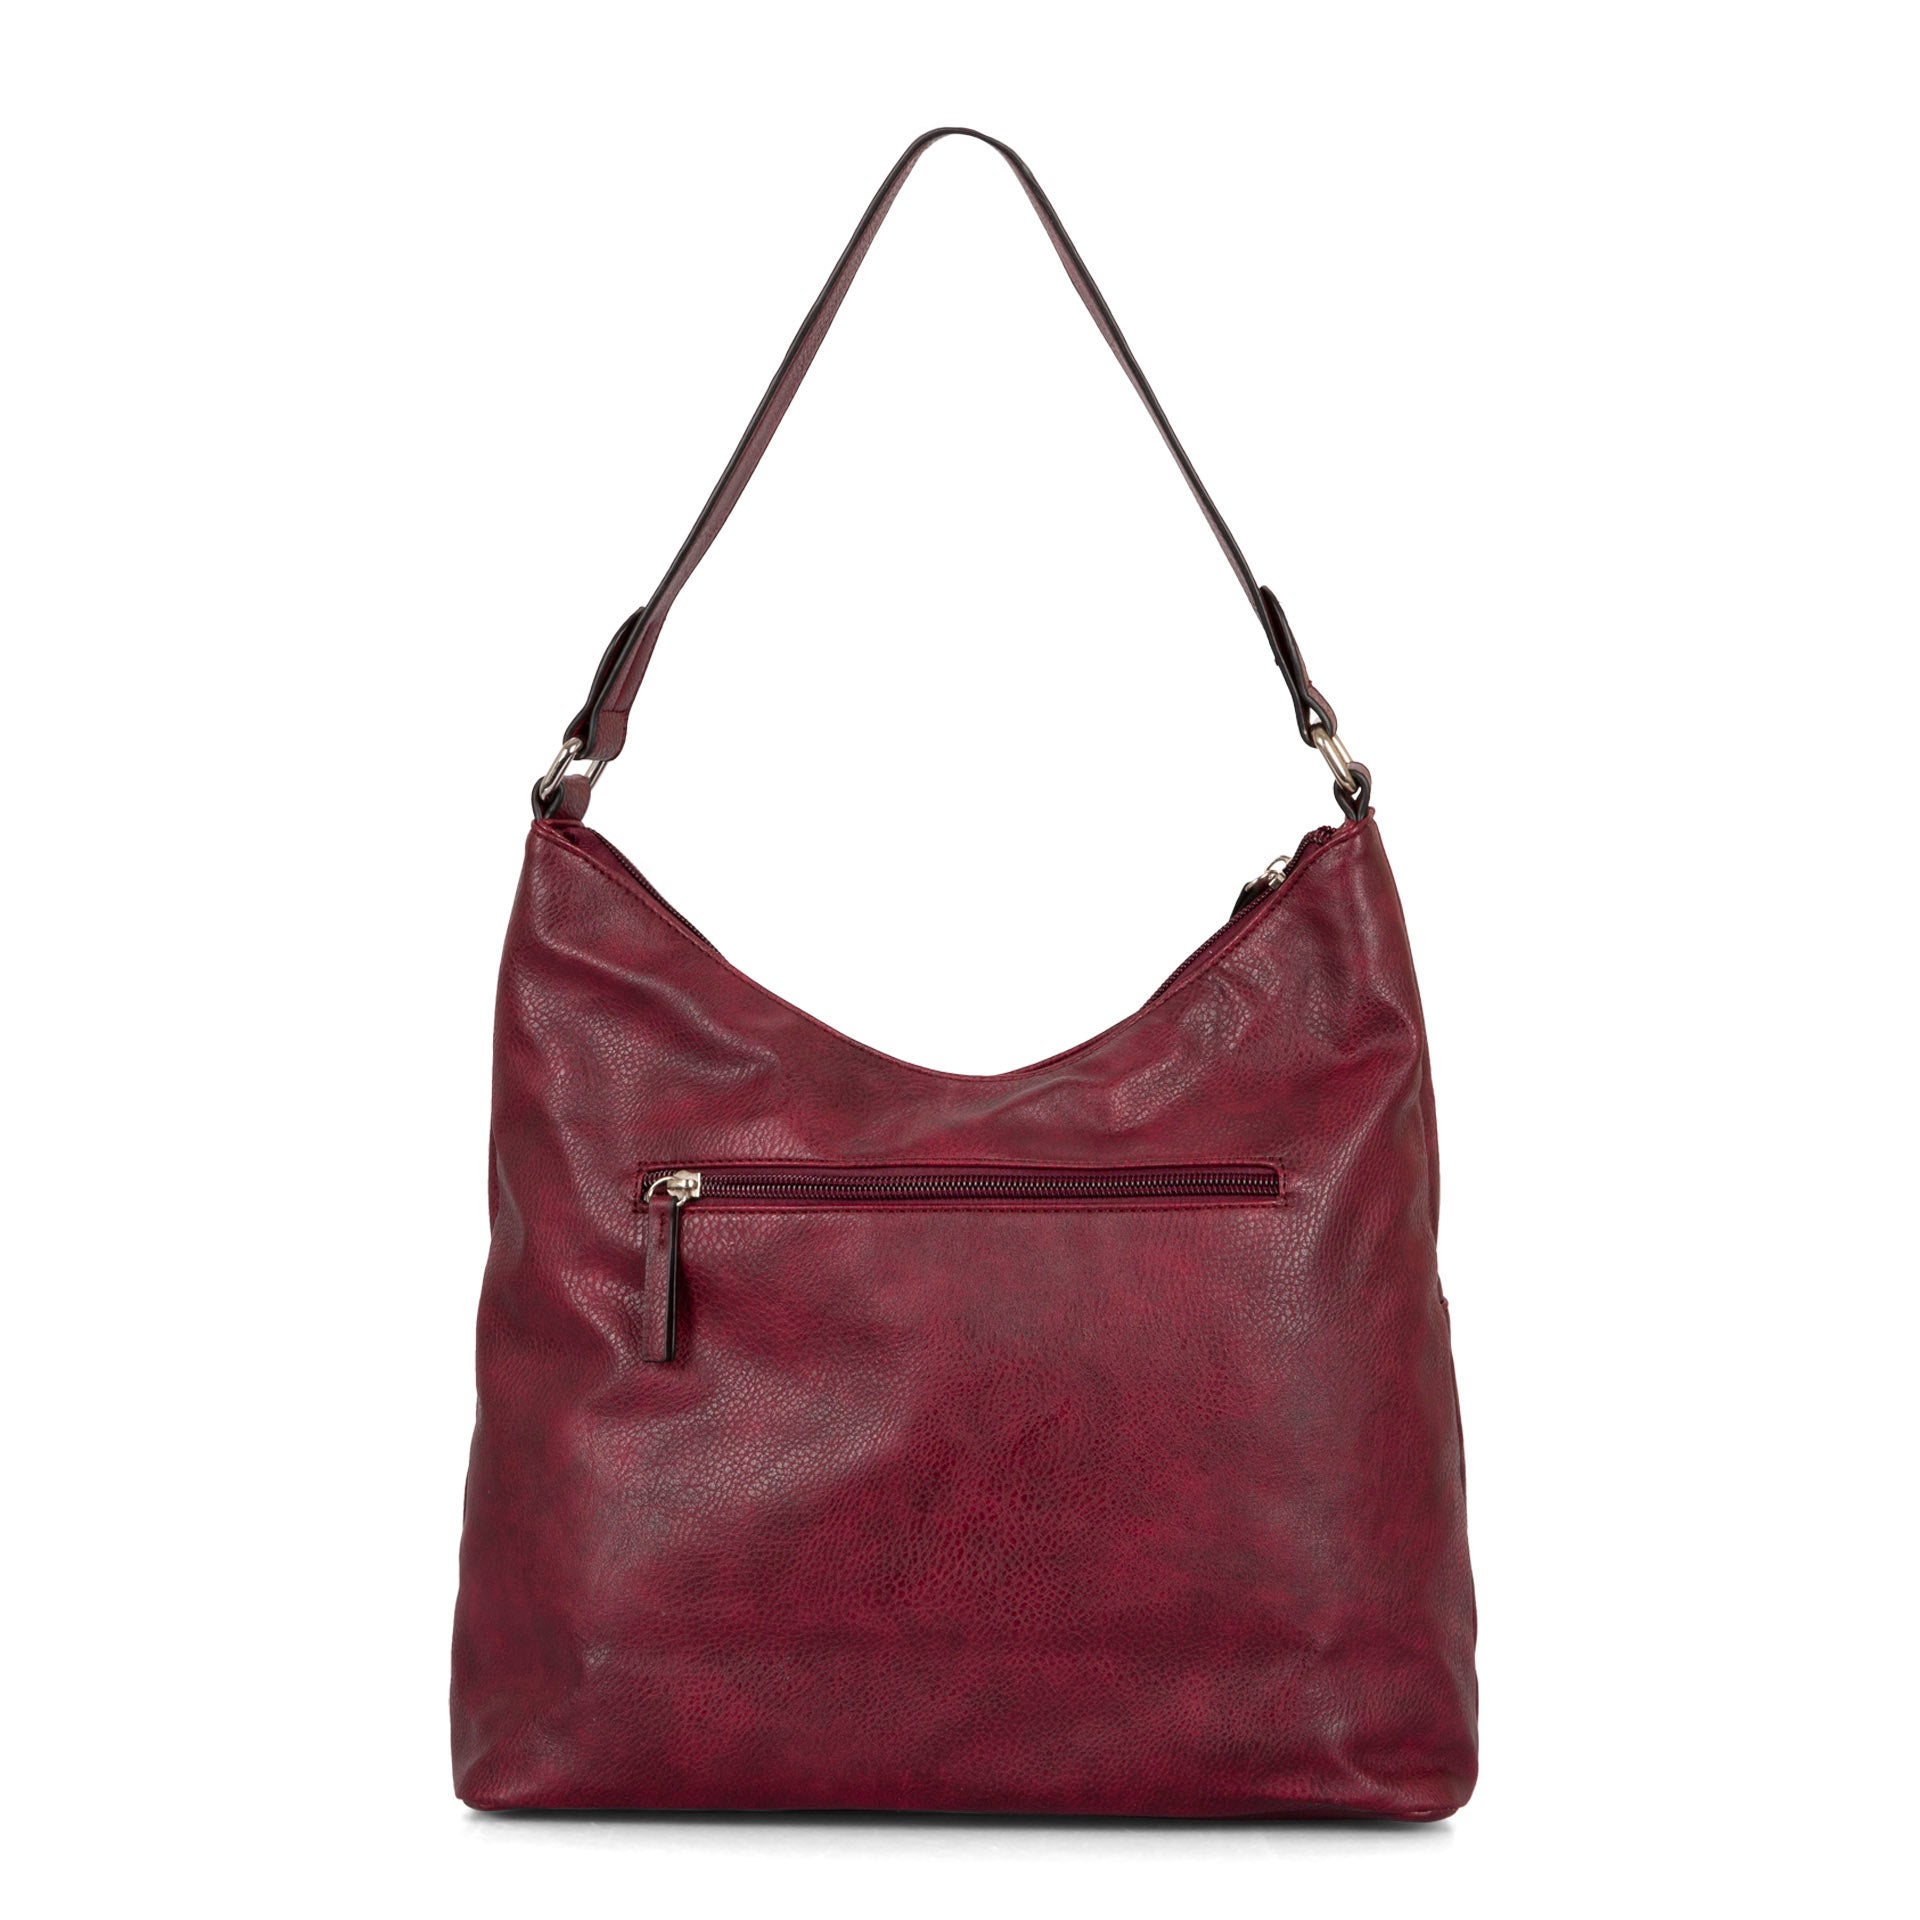 Ladies handbag leather bag clutch hobo bag shoulder bag red crossbody